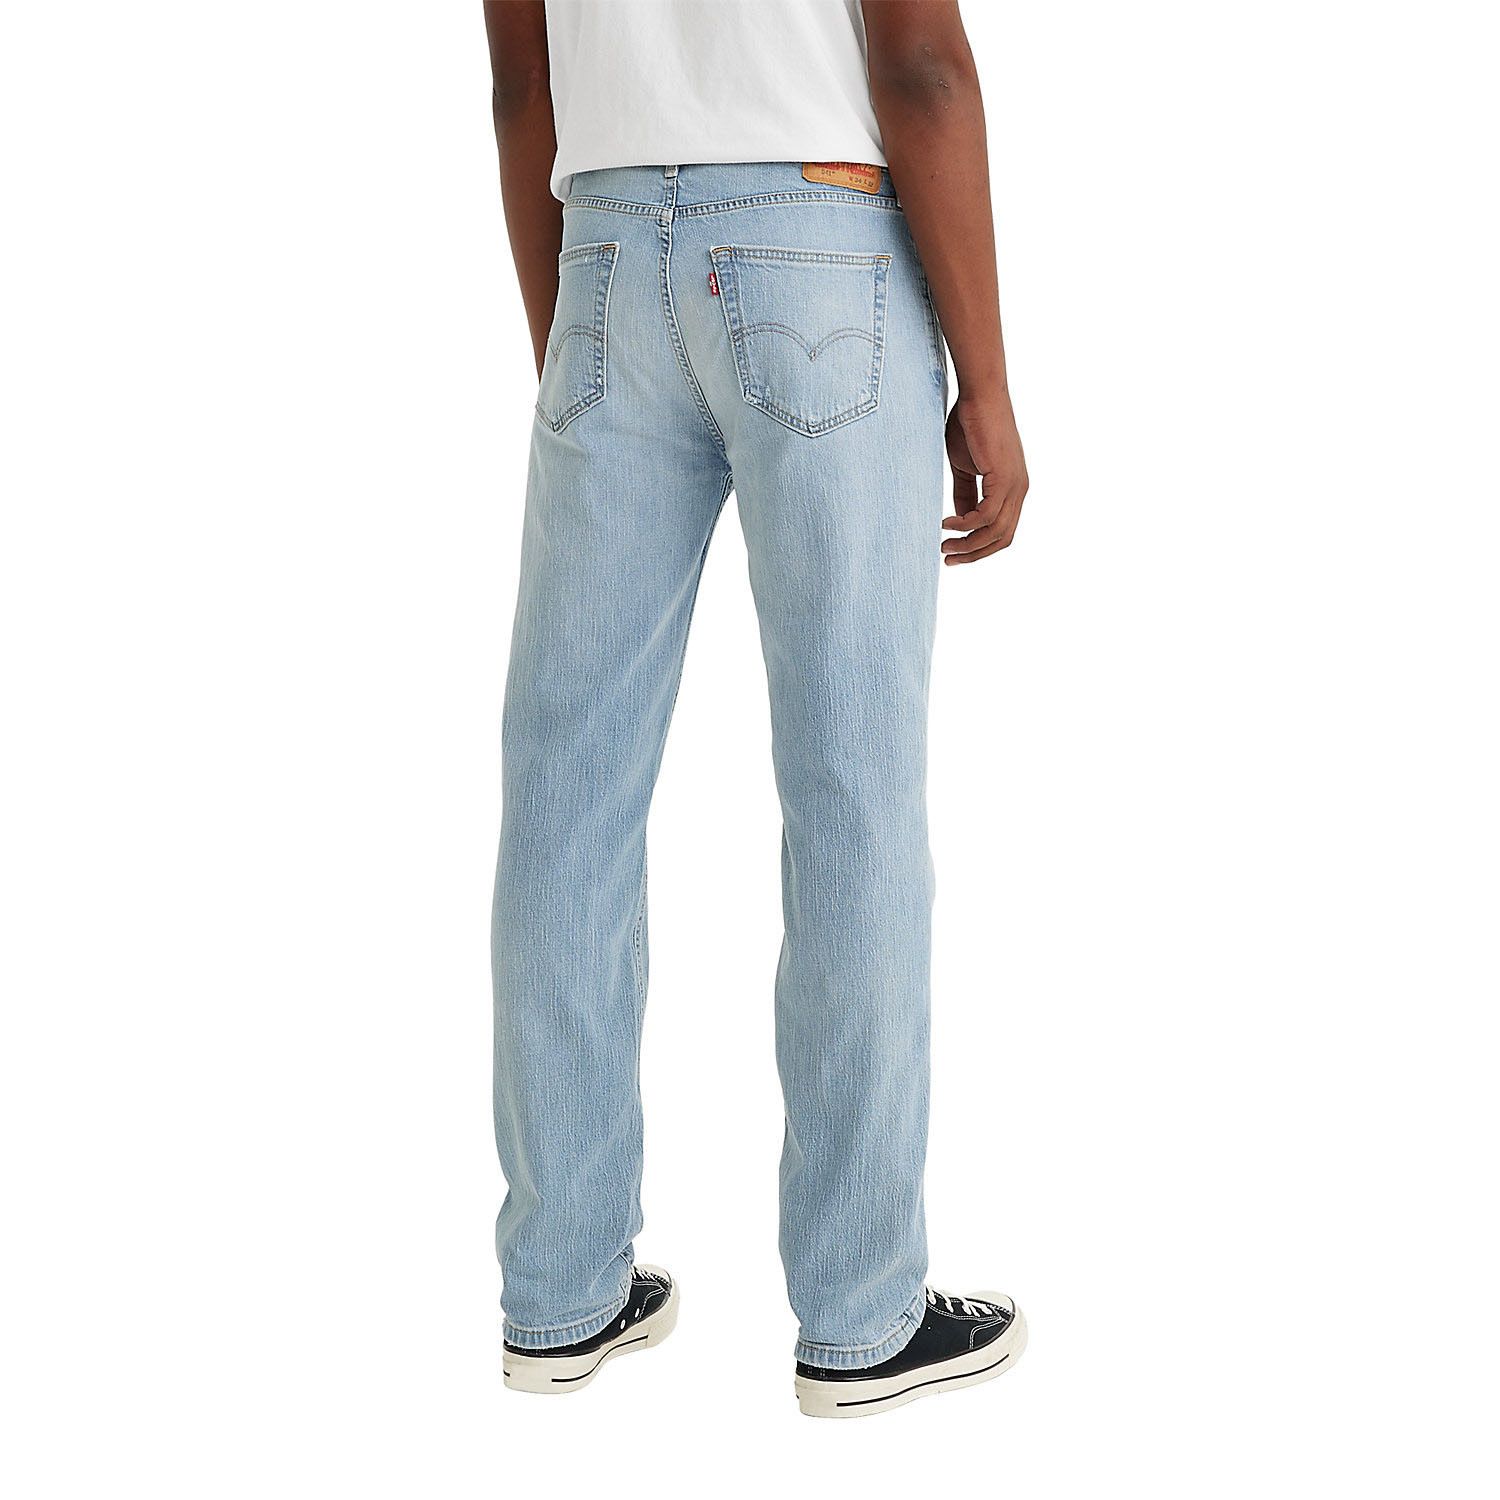 Мужские зауженные эластичные джинсы Levi's 541 цена и фото